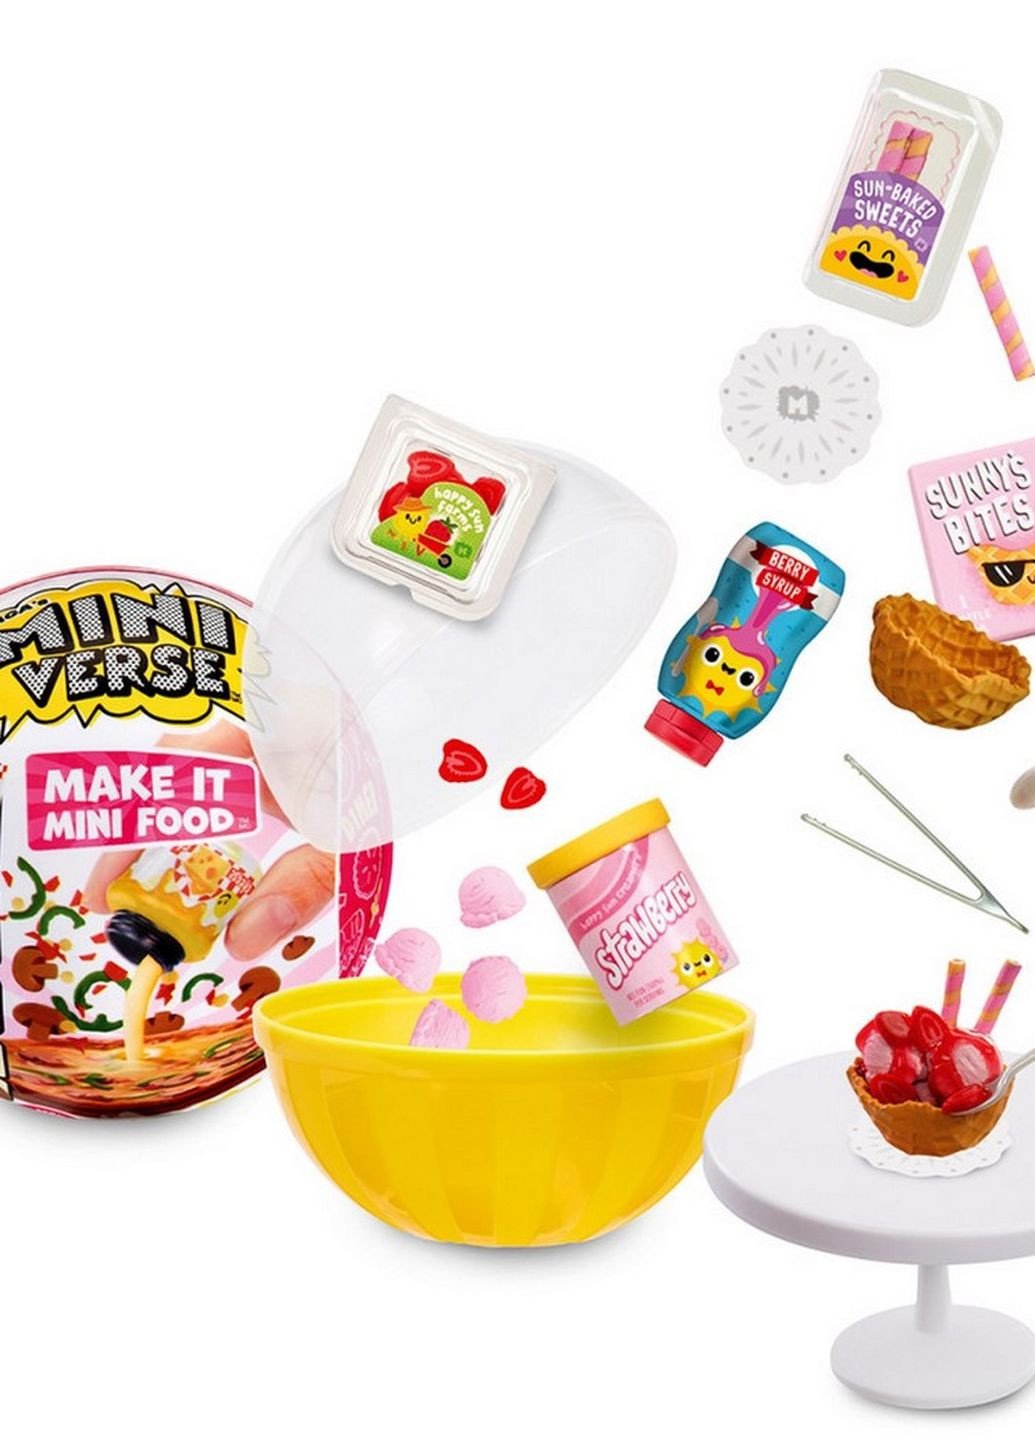 Игровой набор для творчества Создай ужин Miniverse 591825 серии "Mini Food" MGA Entertainment (277752915)